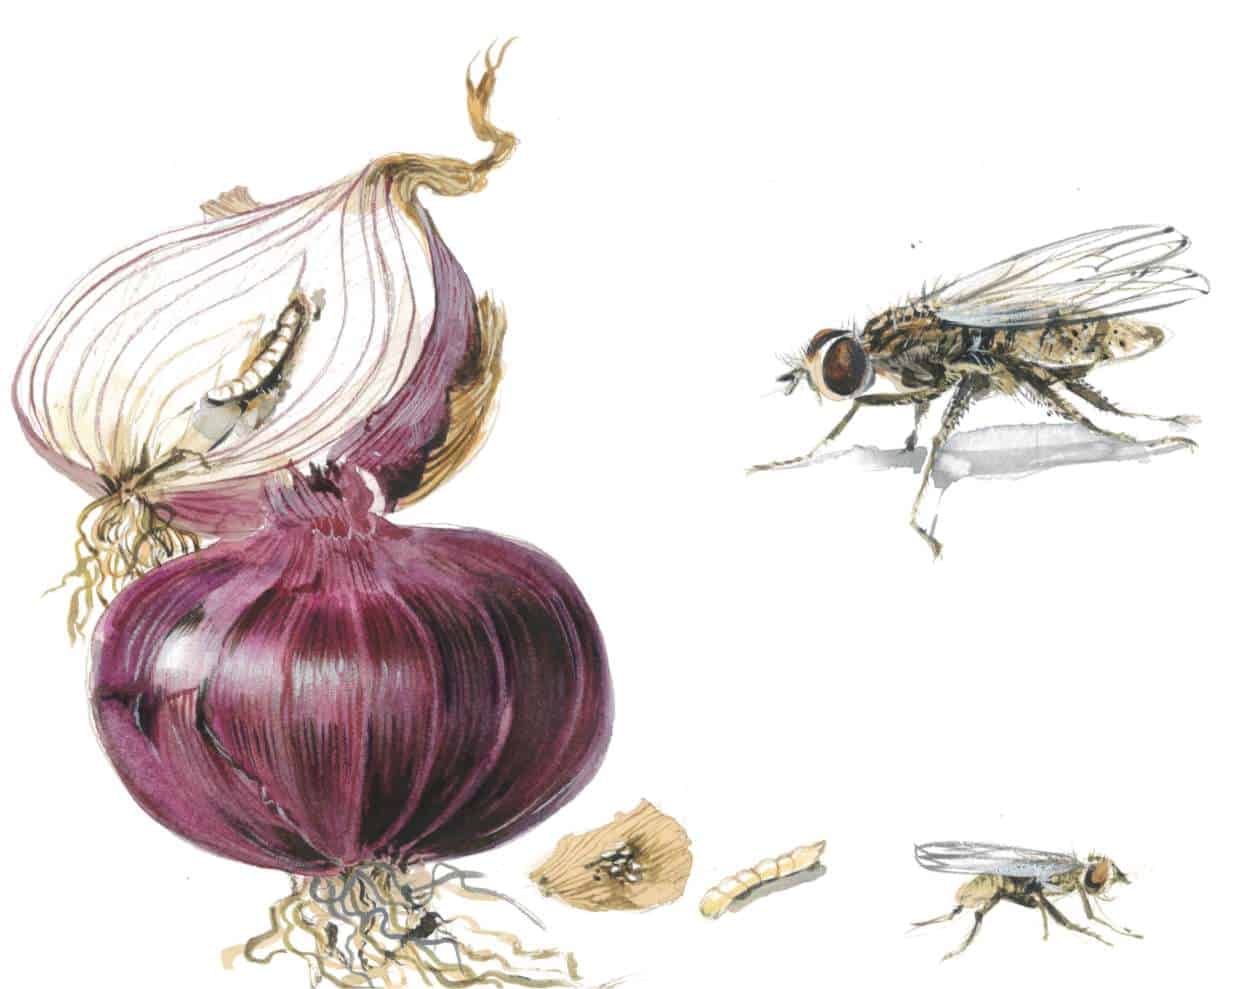 Soğan sineği: Böcekle organik yöntemlerle mücadele